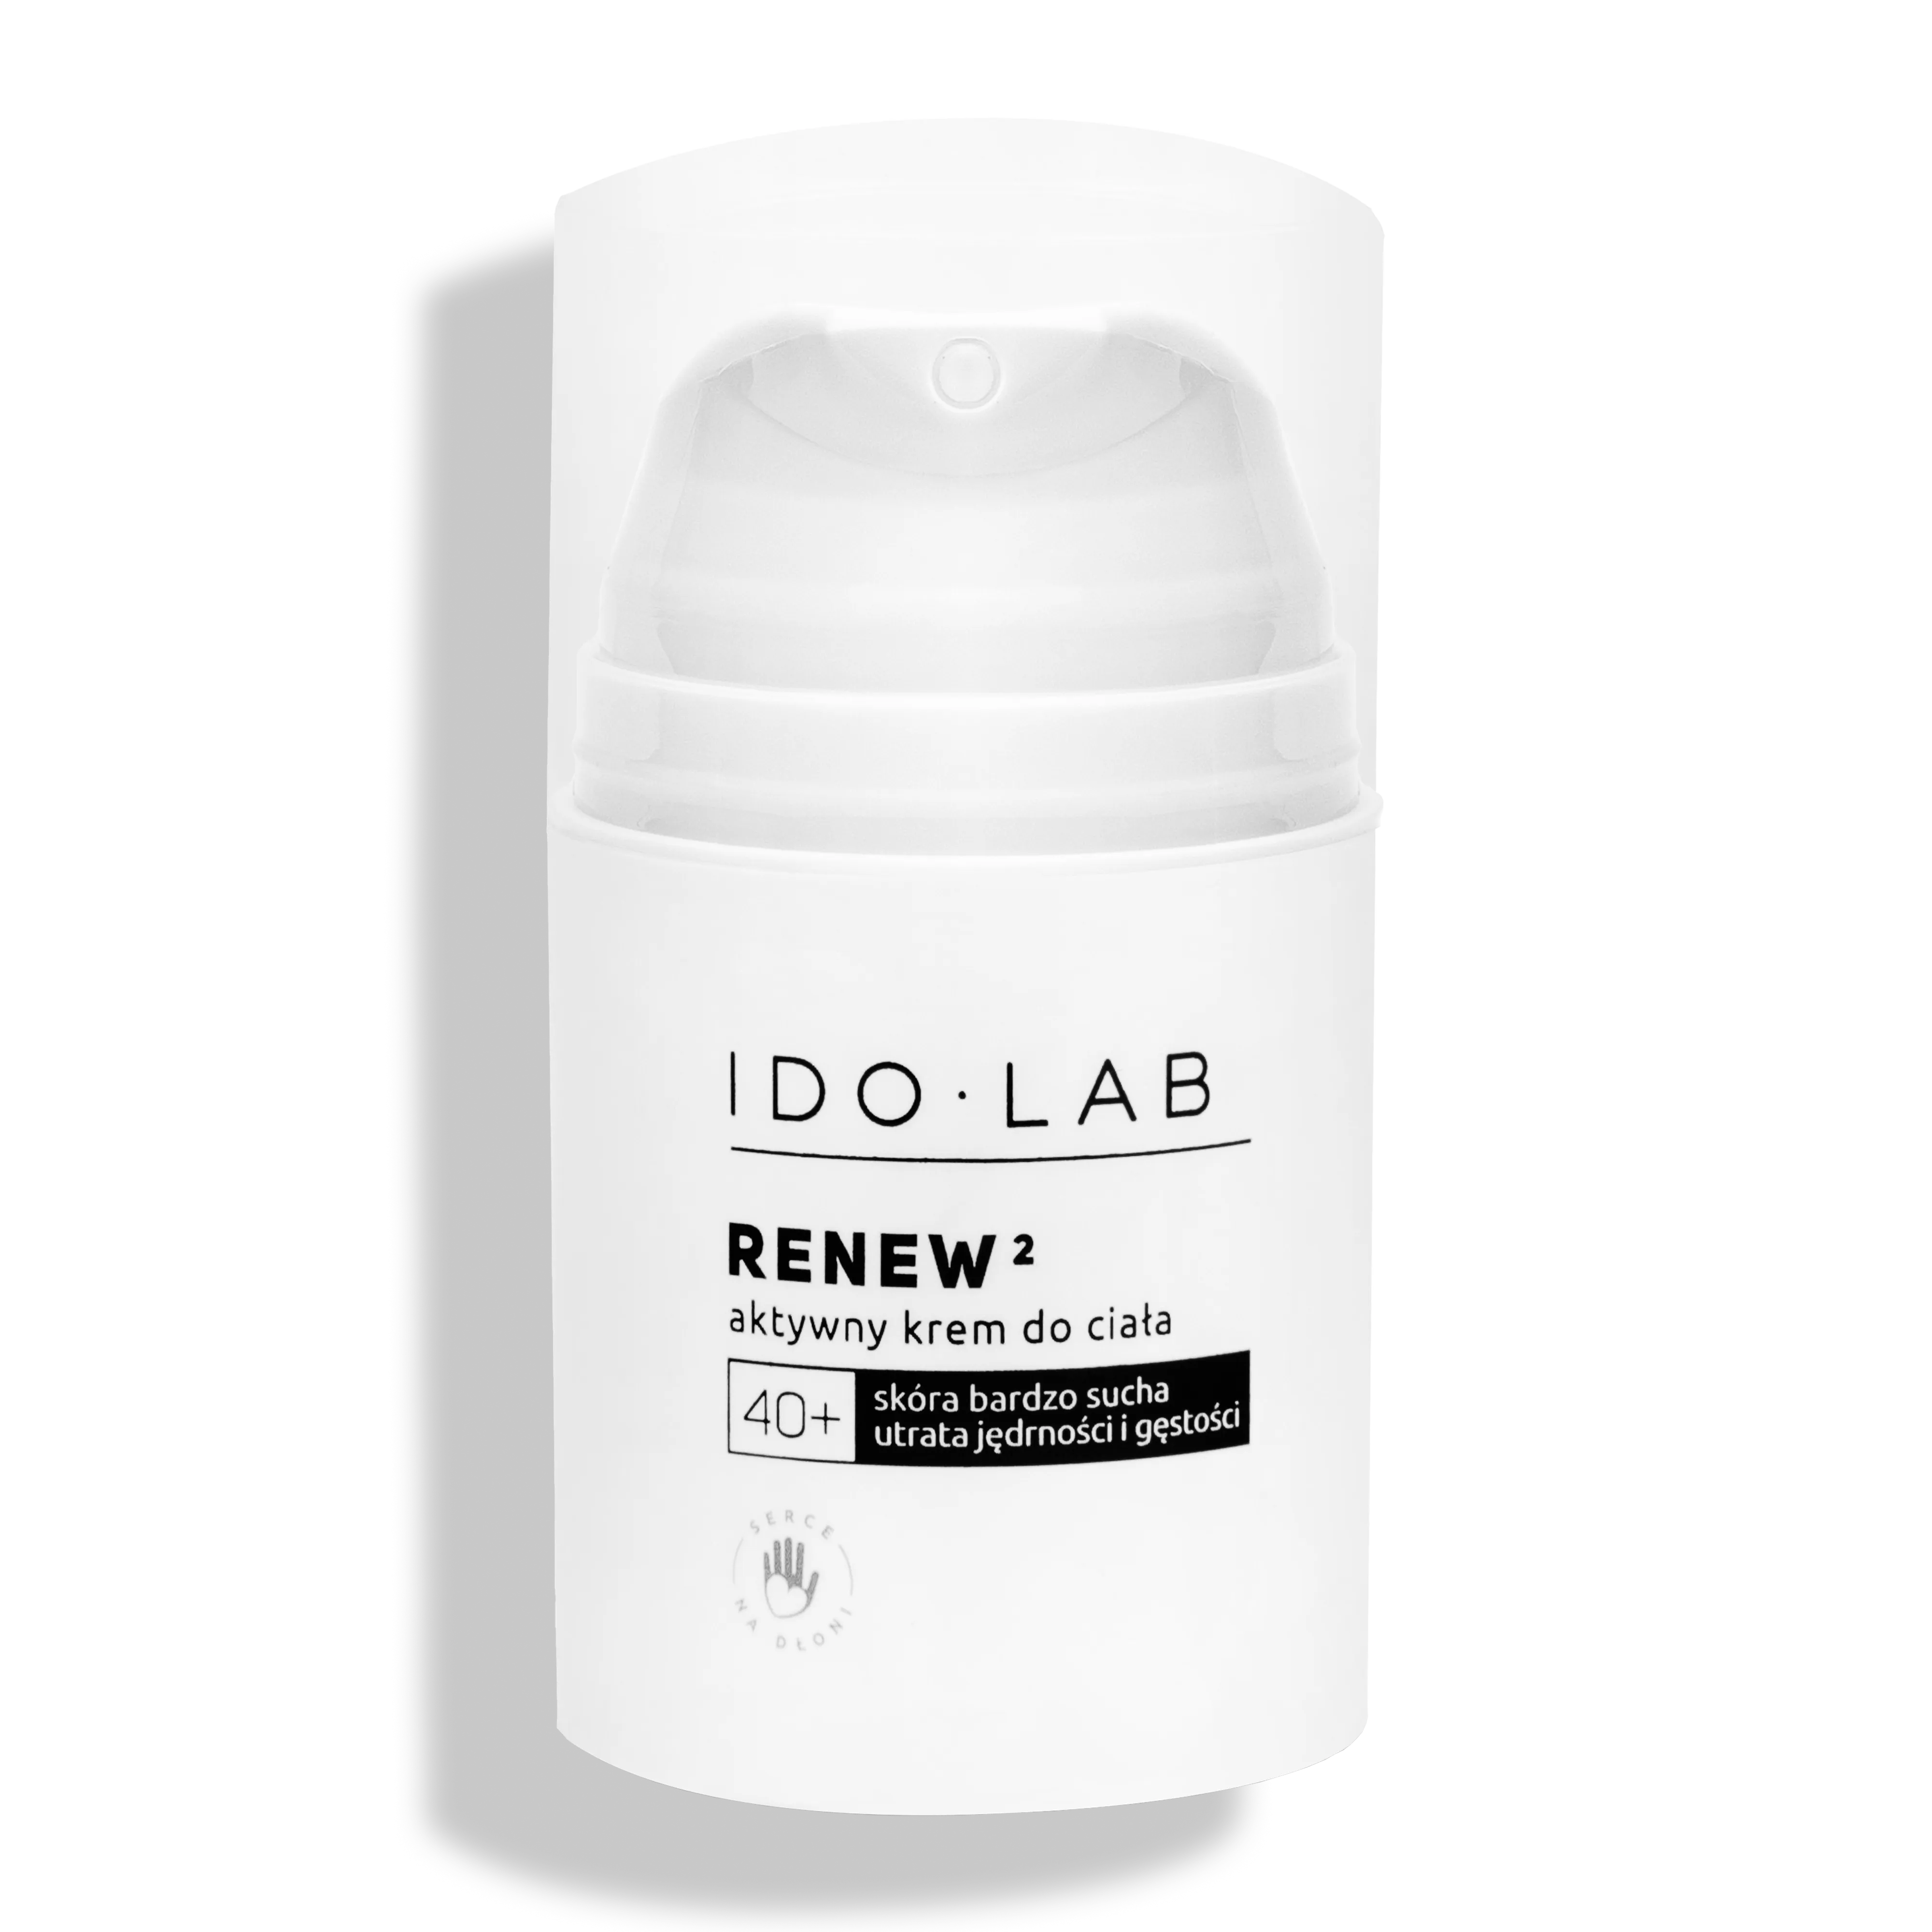 Ido Lab Renew2 intensywnie nawilżający aktywny krem do ciała do skóry dojrzałej 40+, 50 ml